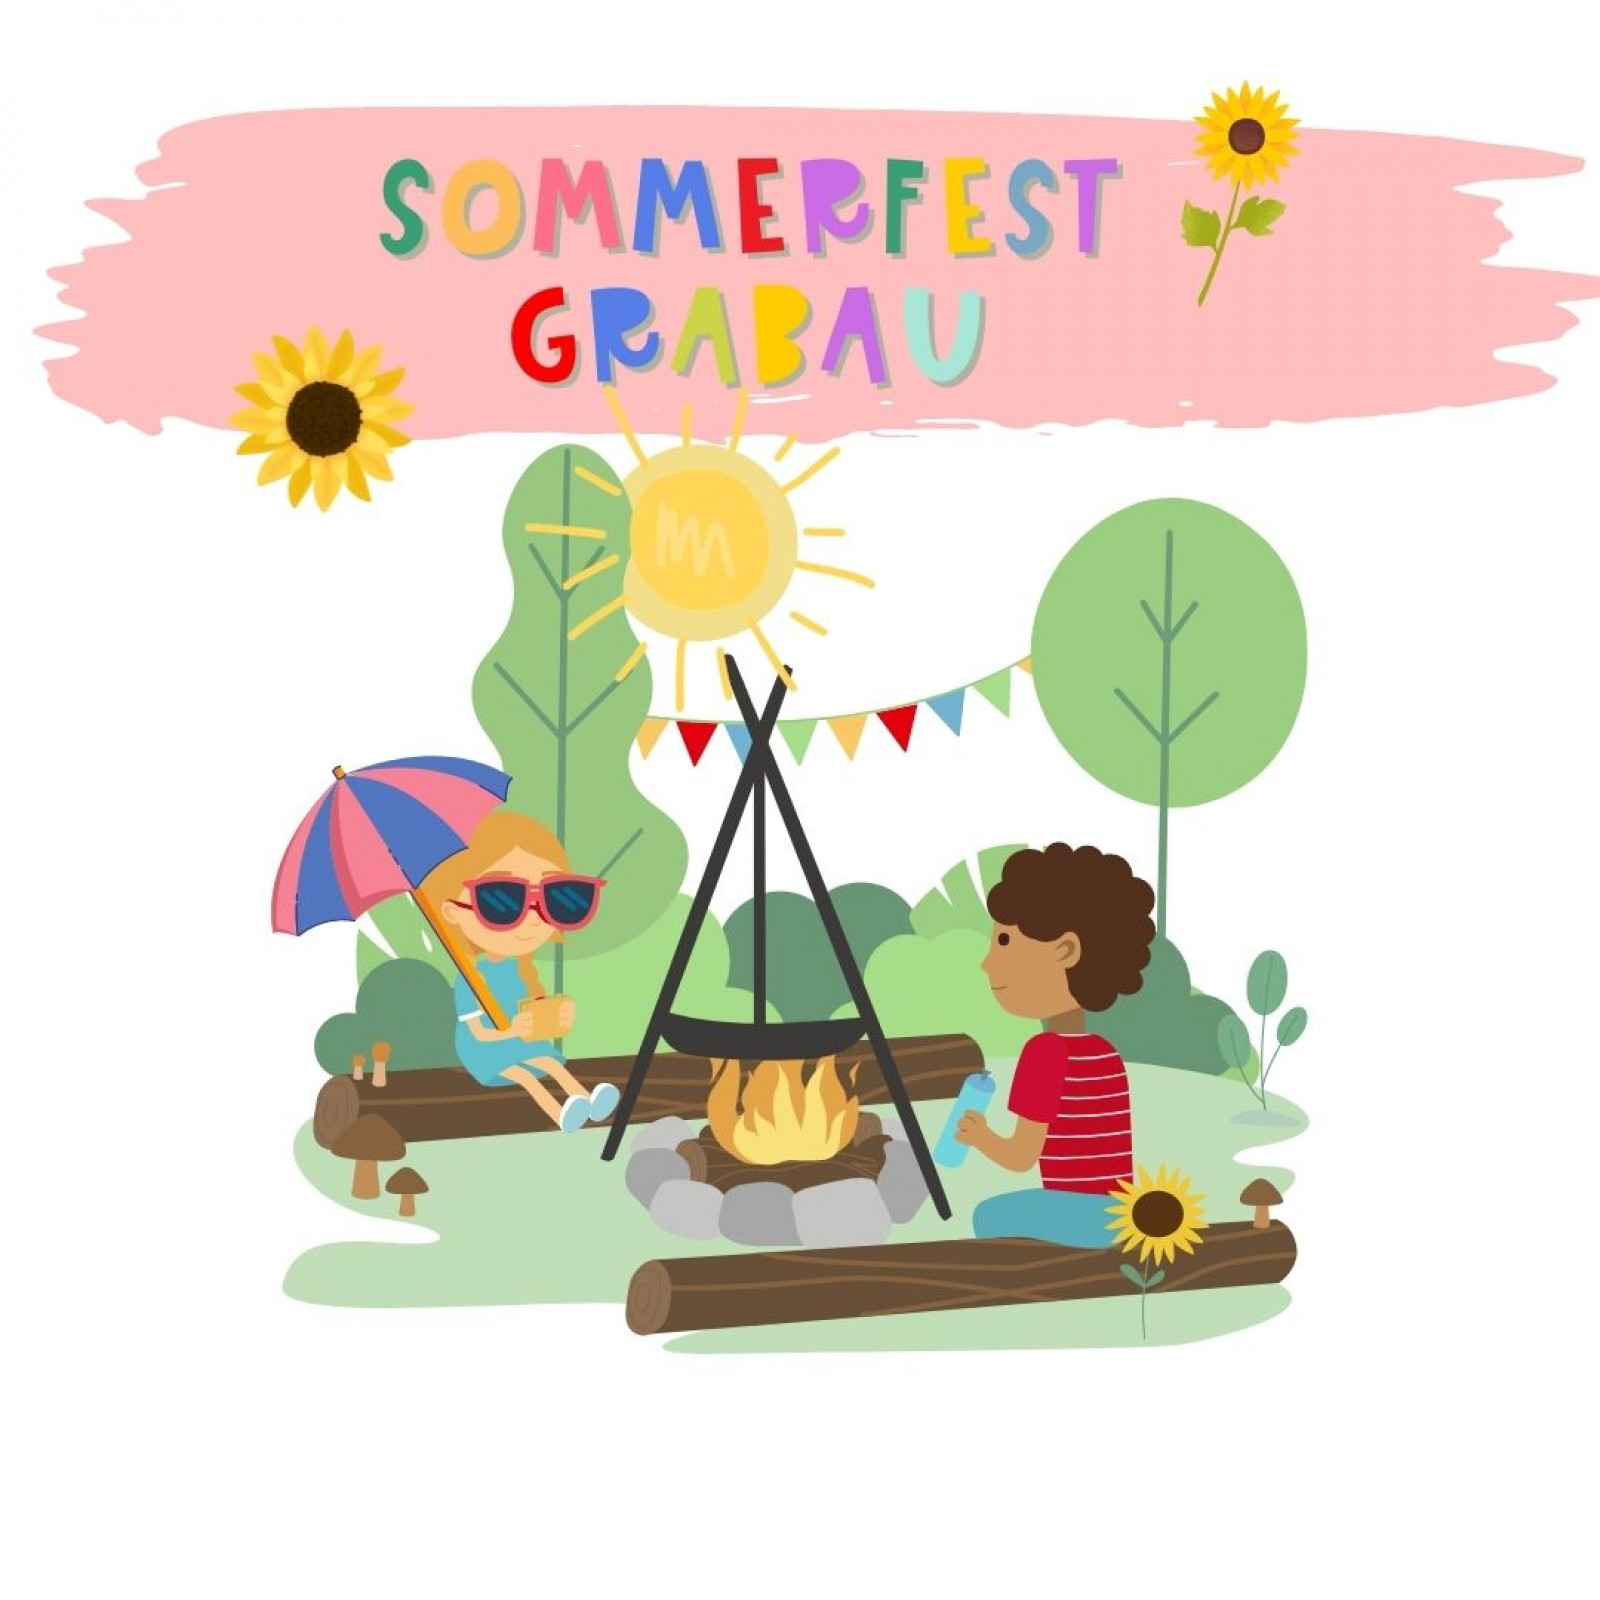 Sommerfest Grabau